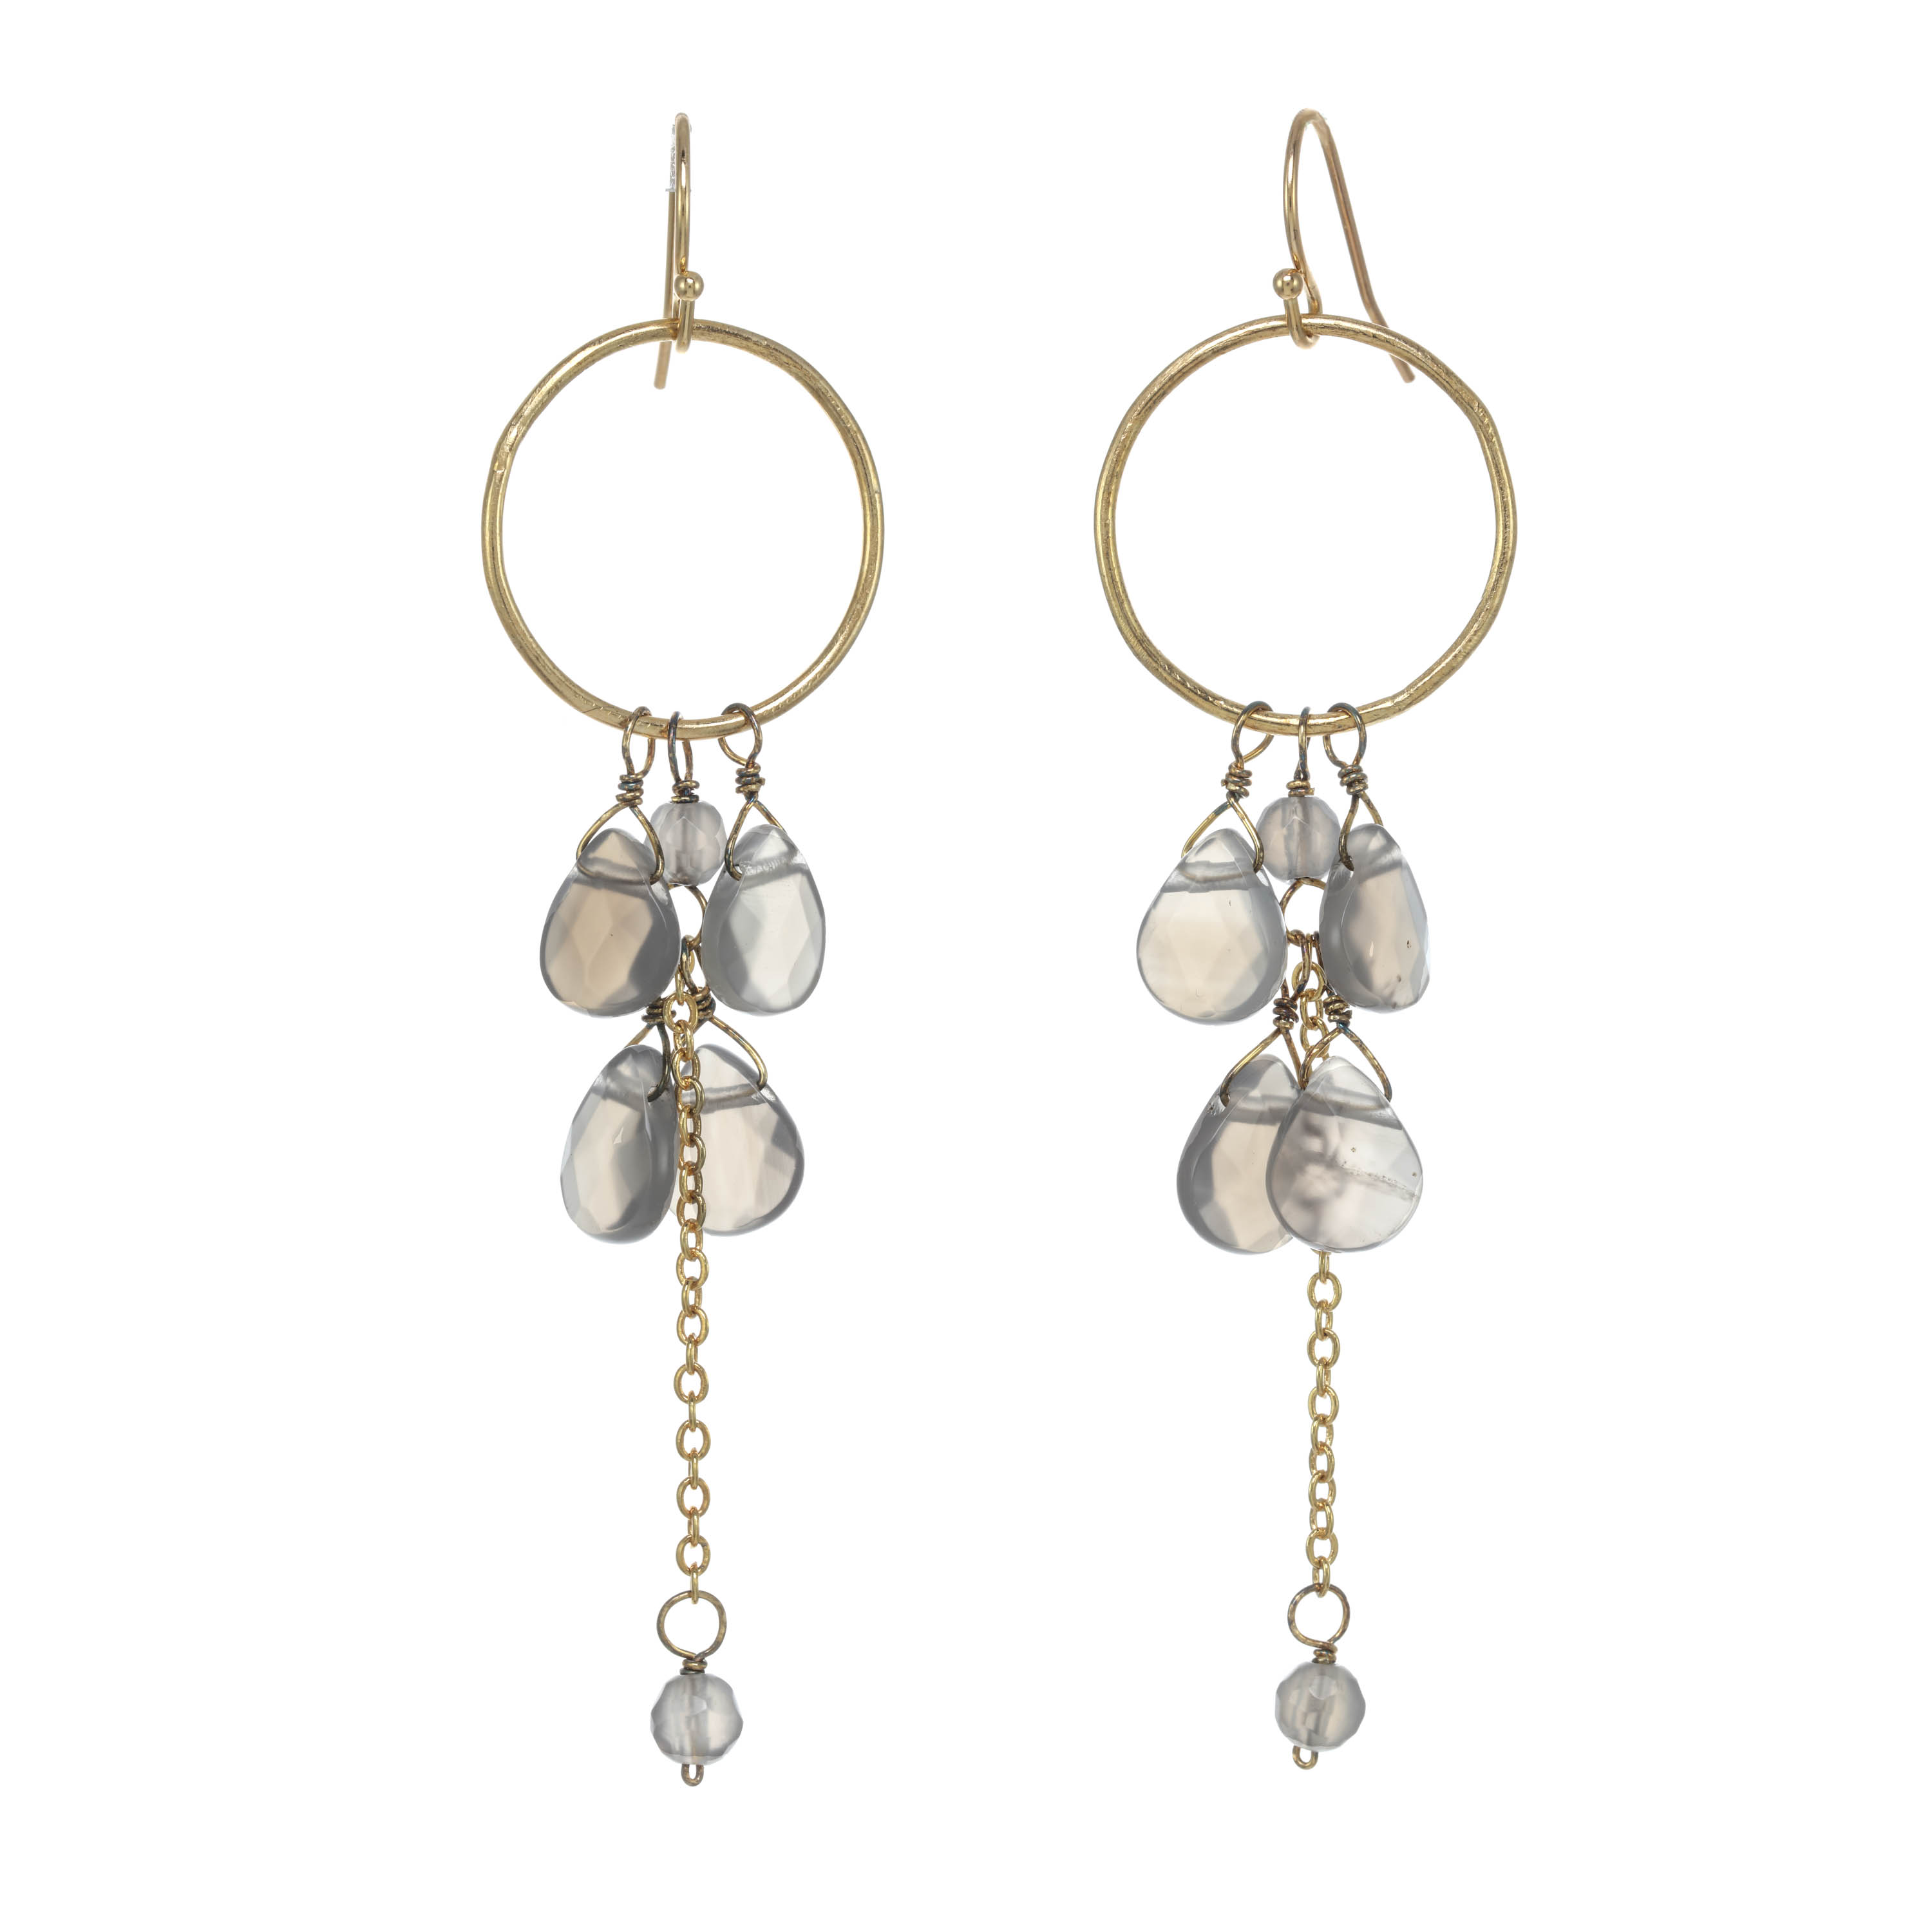 Taolei Pierce earrings